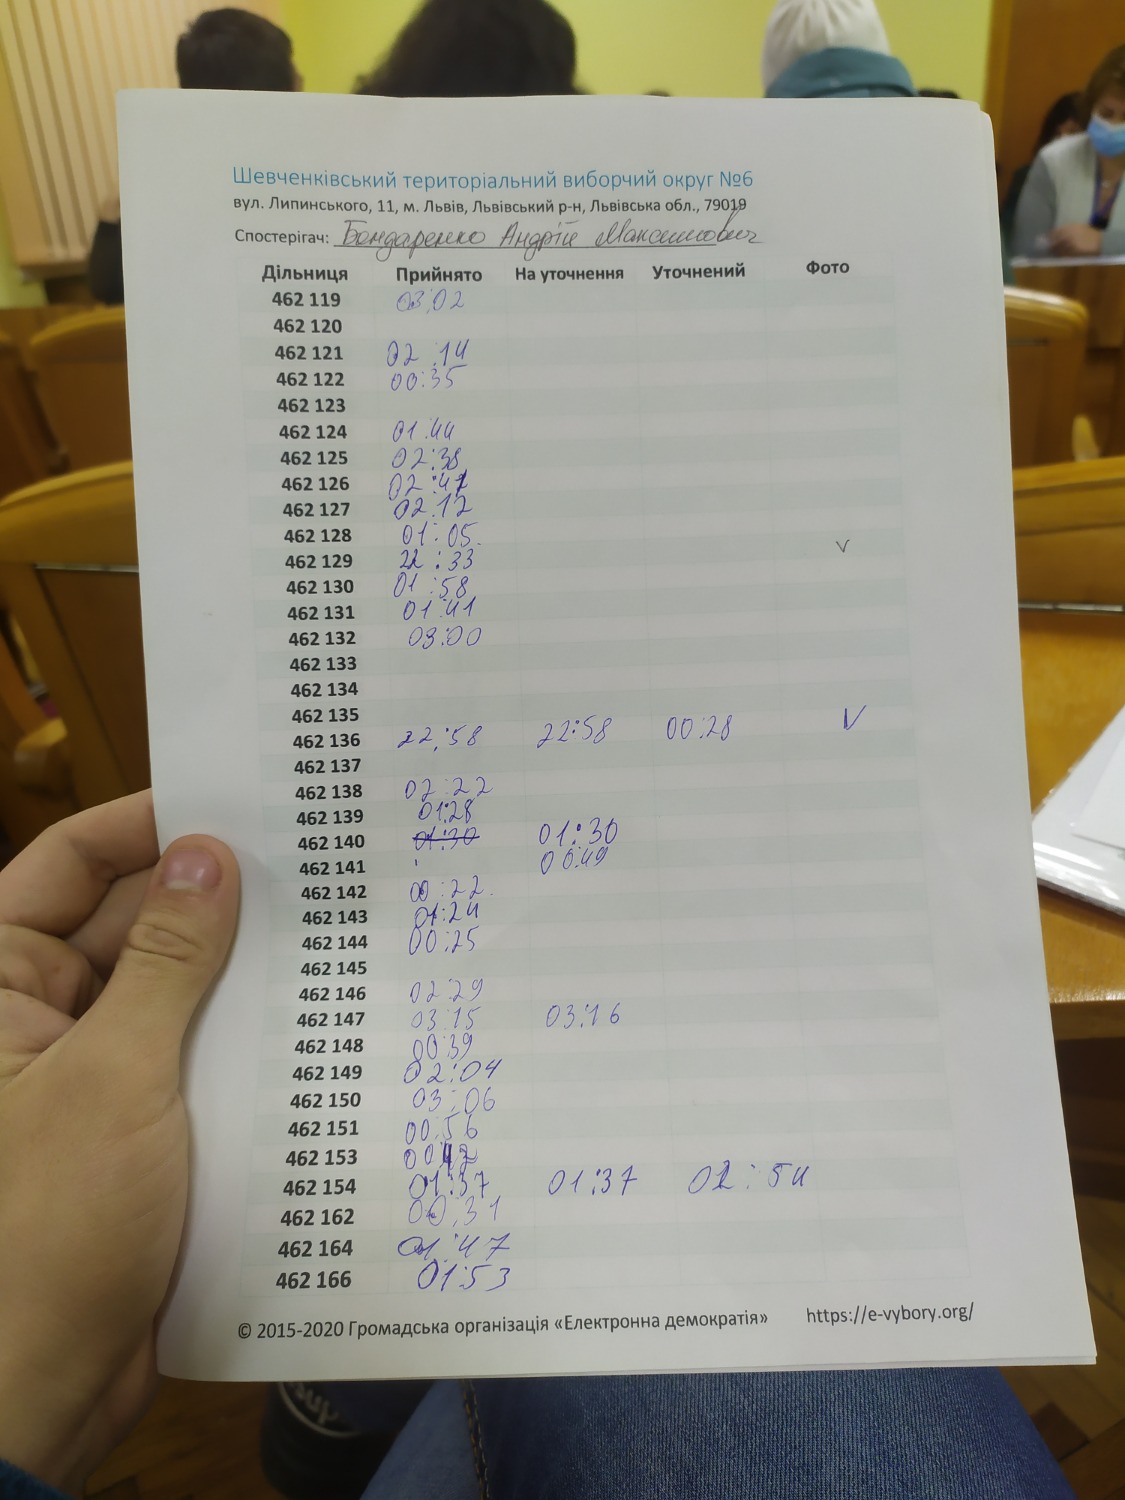 Протокол результатів голосування на виборчій дільниці № 462147